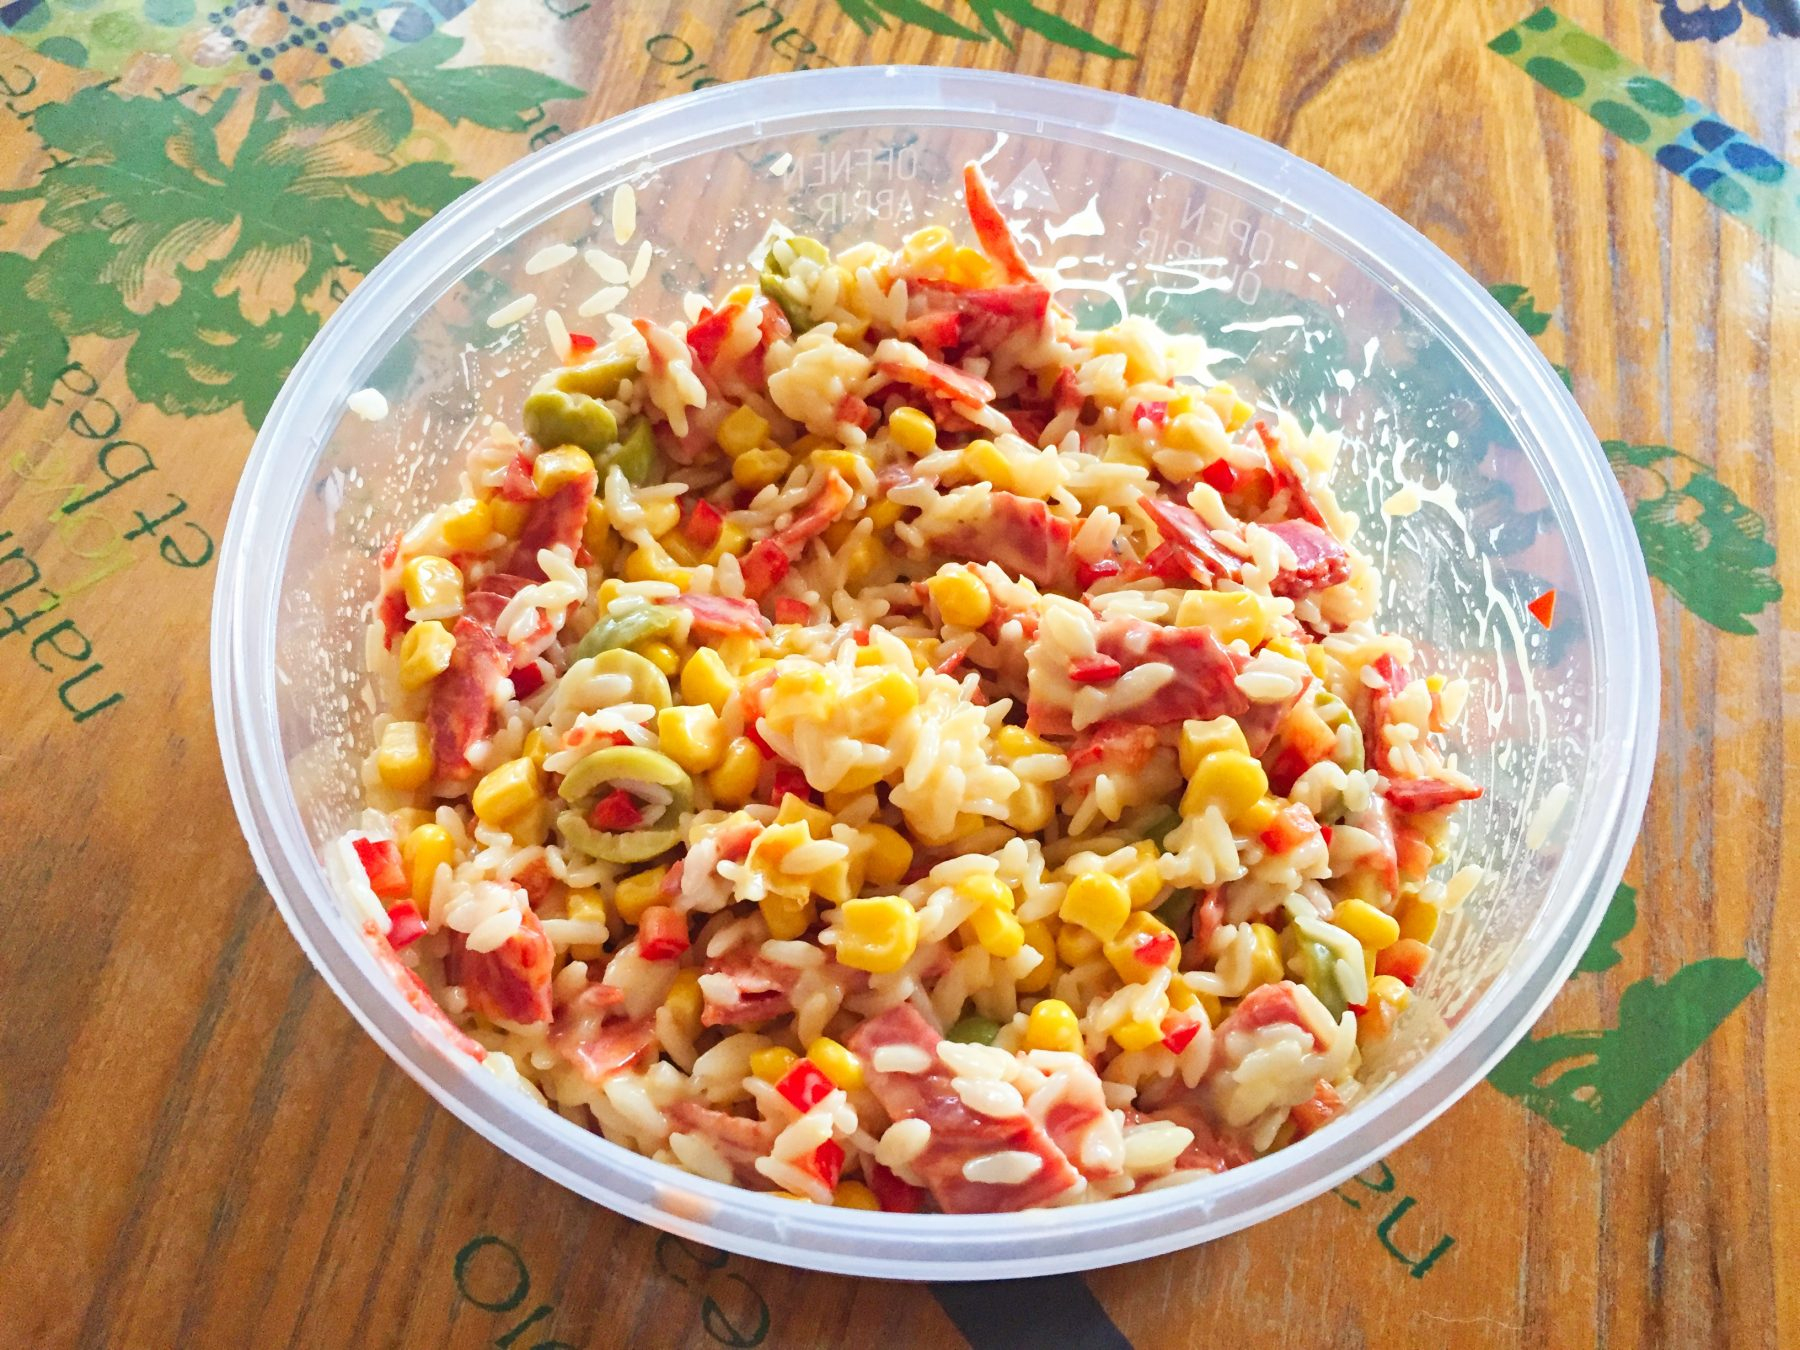 ♨ Recette De Salade De Riz Au Chorizo  Cuisine Blog encequiconcerne Salade De Riz Antillaise vous pouvez essayer 